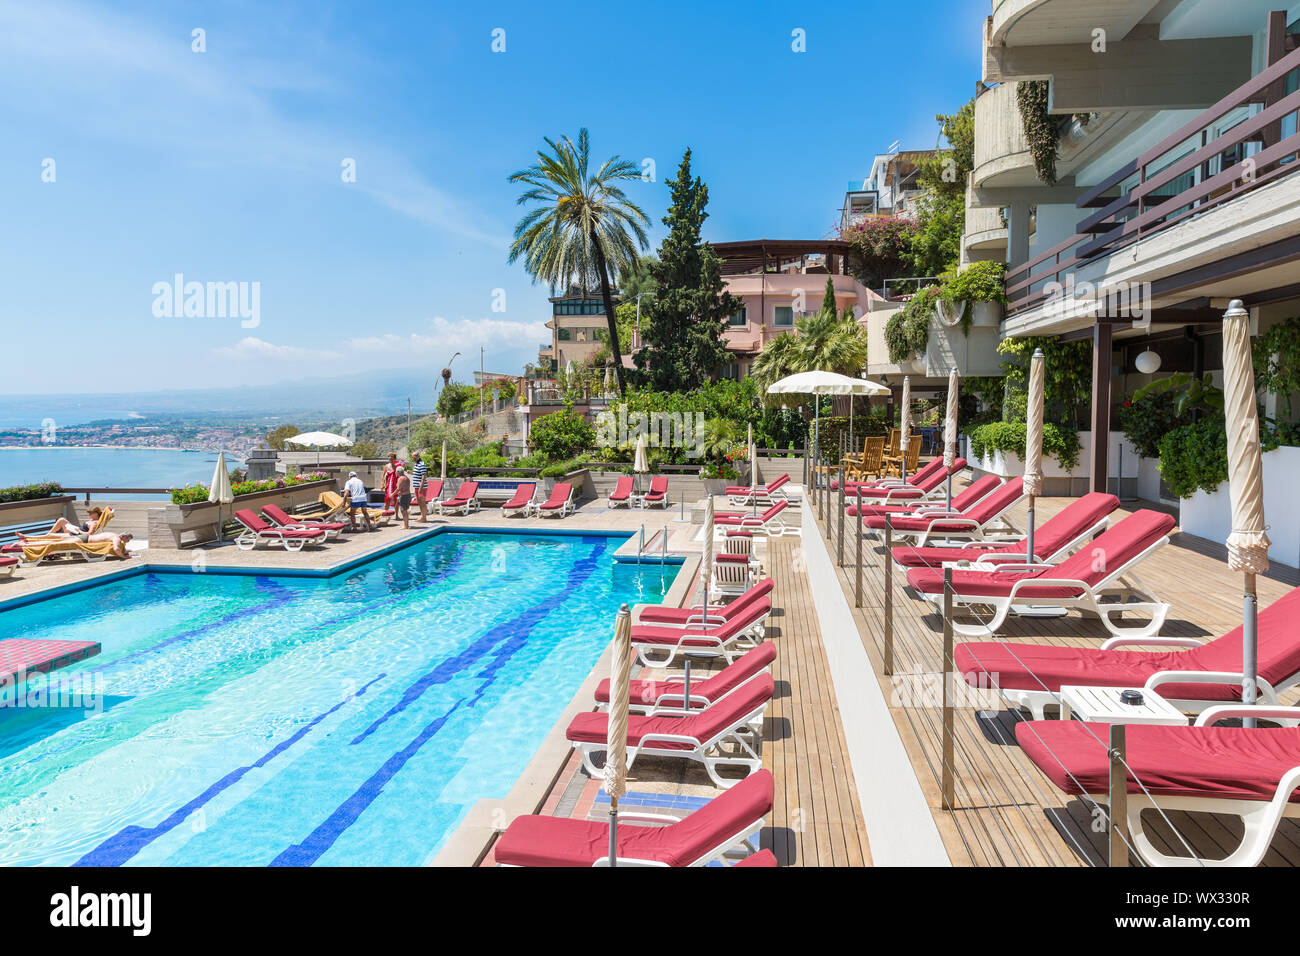 Hotel piscina Taormina con vista sul litorale siciliano Foto Stock